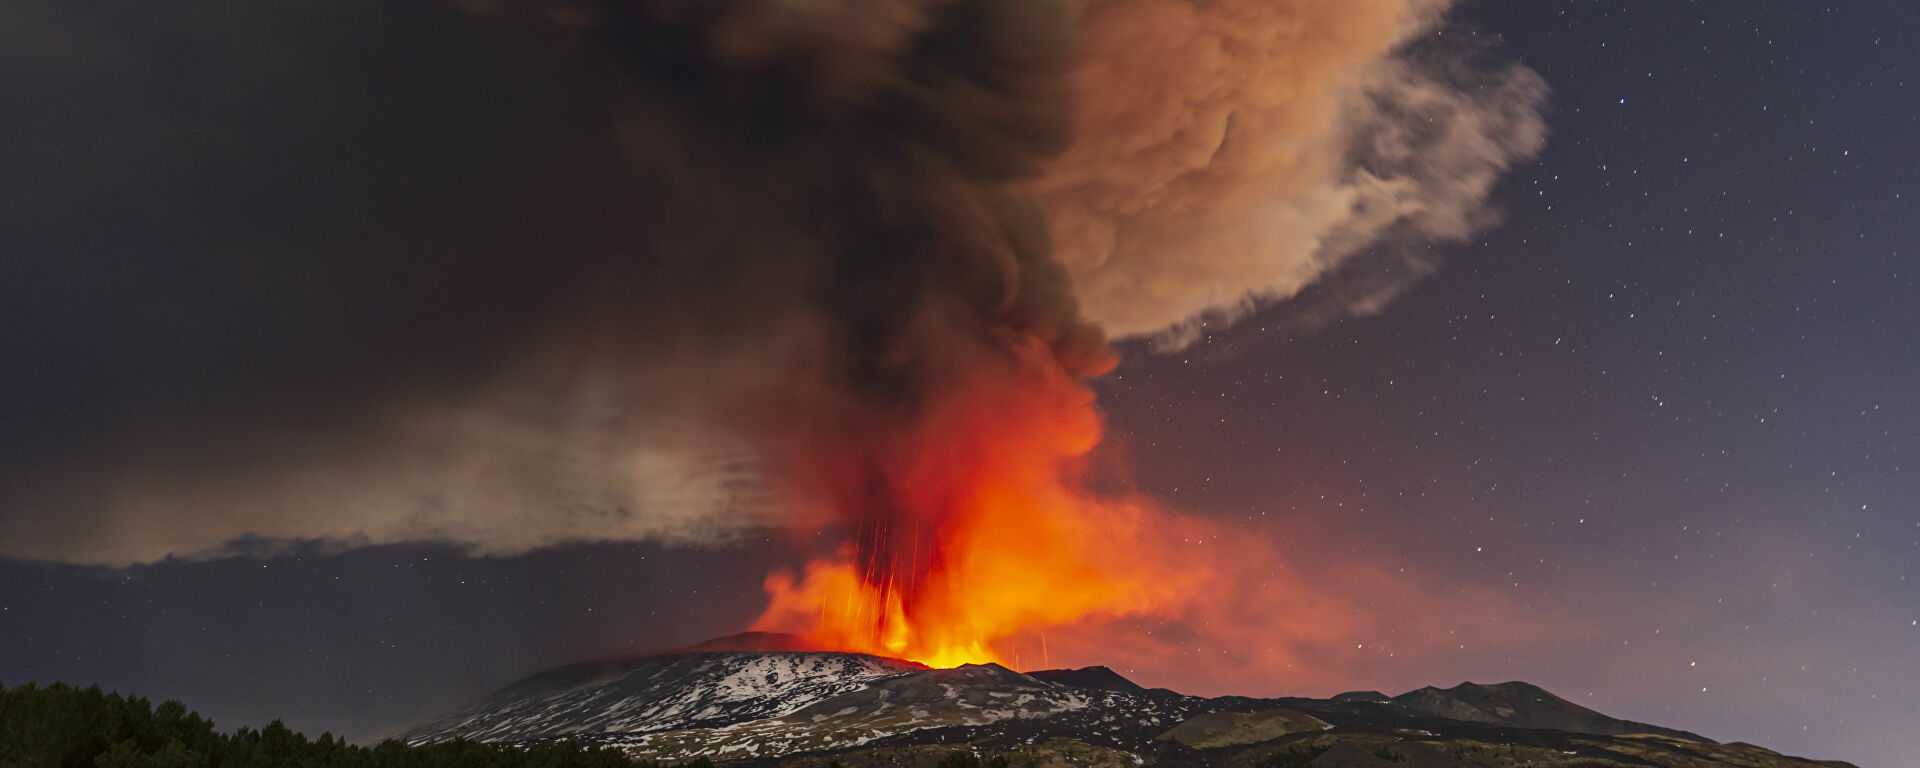 Извержение вулкана (вулканическая активность):ликбез от дилетанта estimata